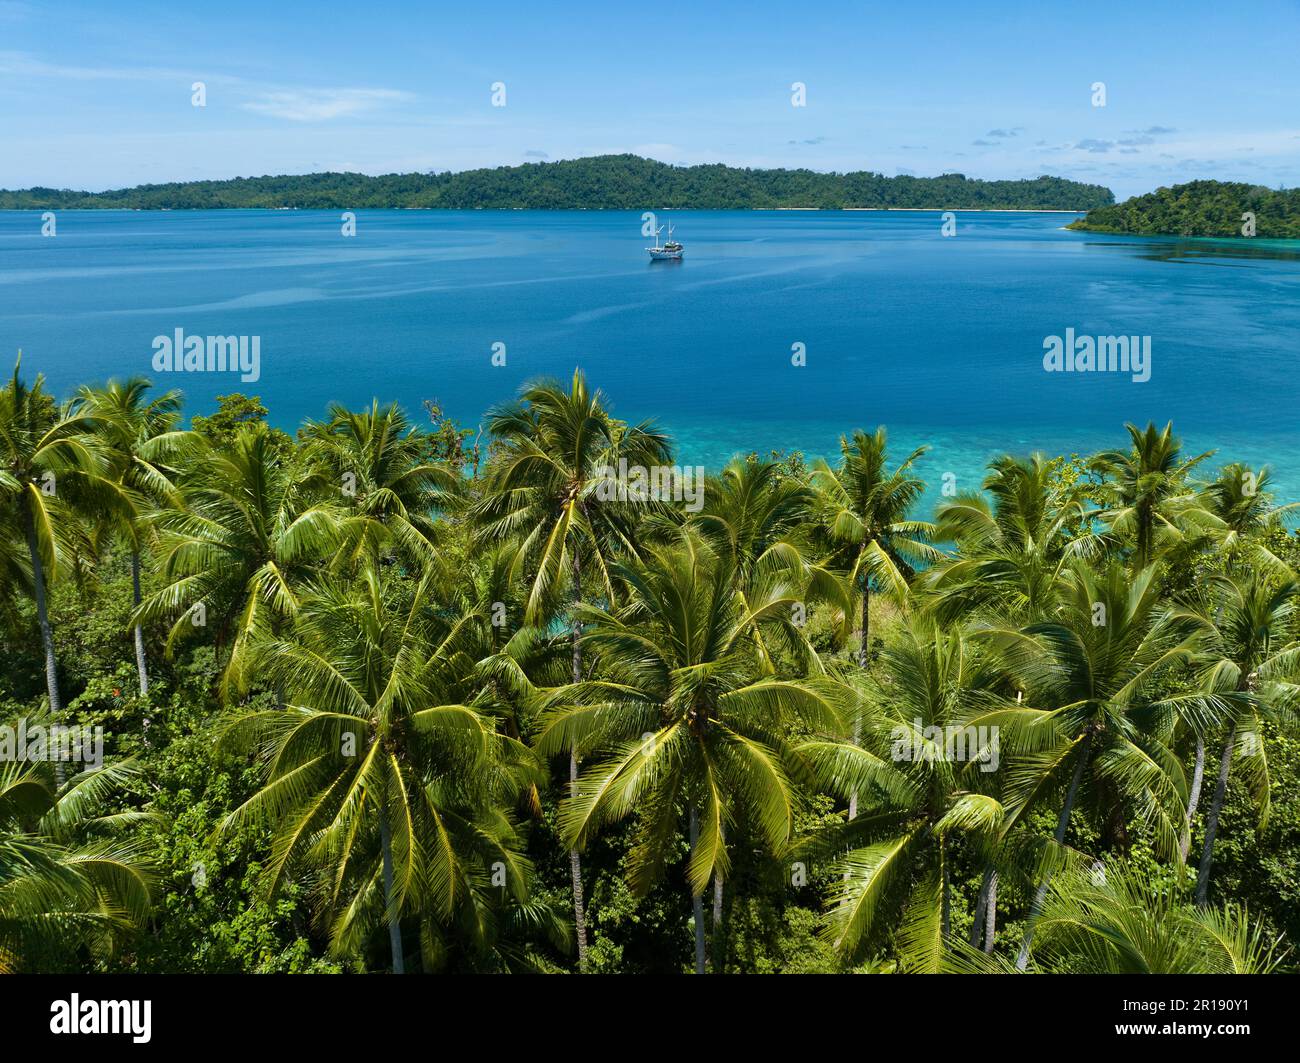 Alberi di palma crescono su una panoramica isola tropicale al largo della costa di Papua Occidentale, Indonesia. Questa parte remota dell'Indonesia è nota per la sua elevata biodiversità. Foto Stock